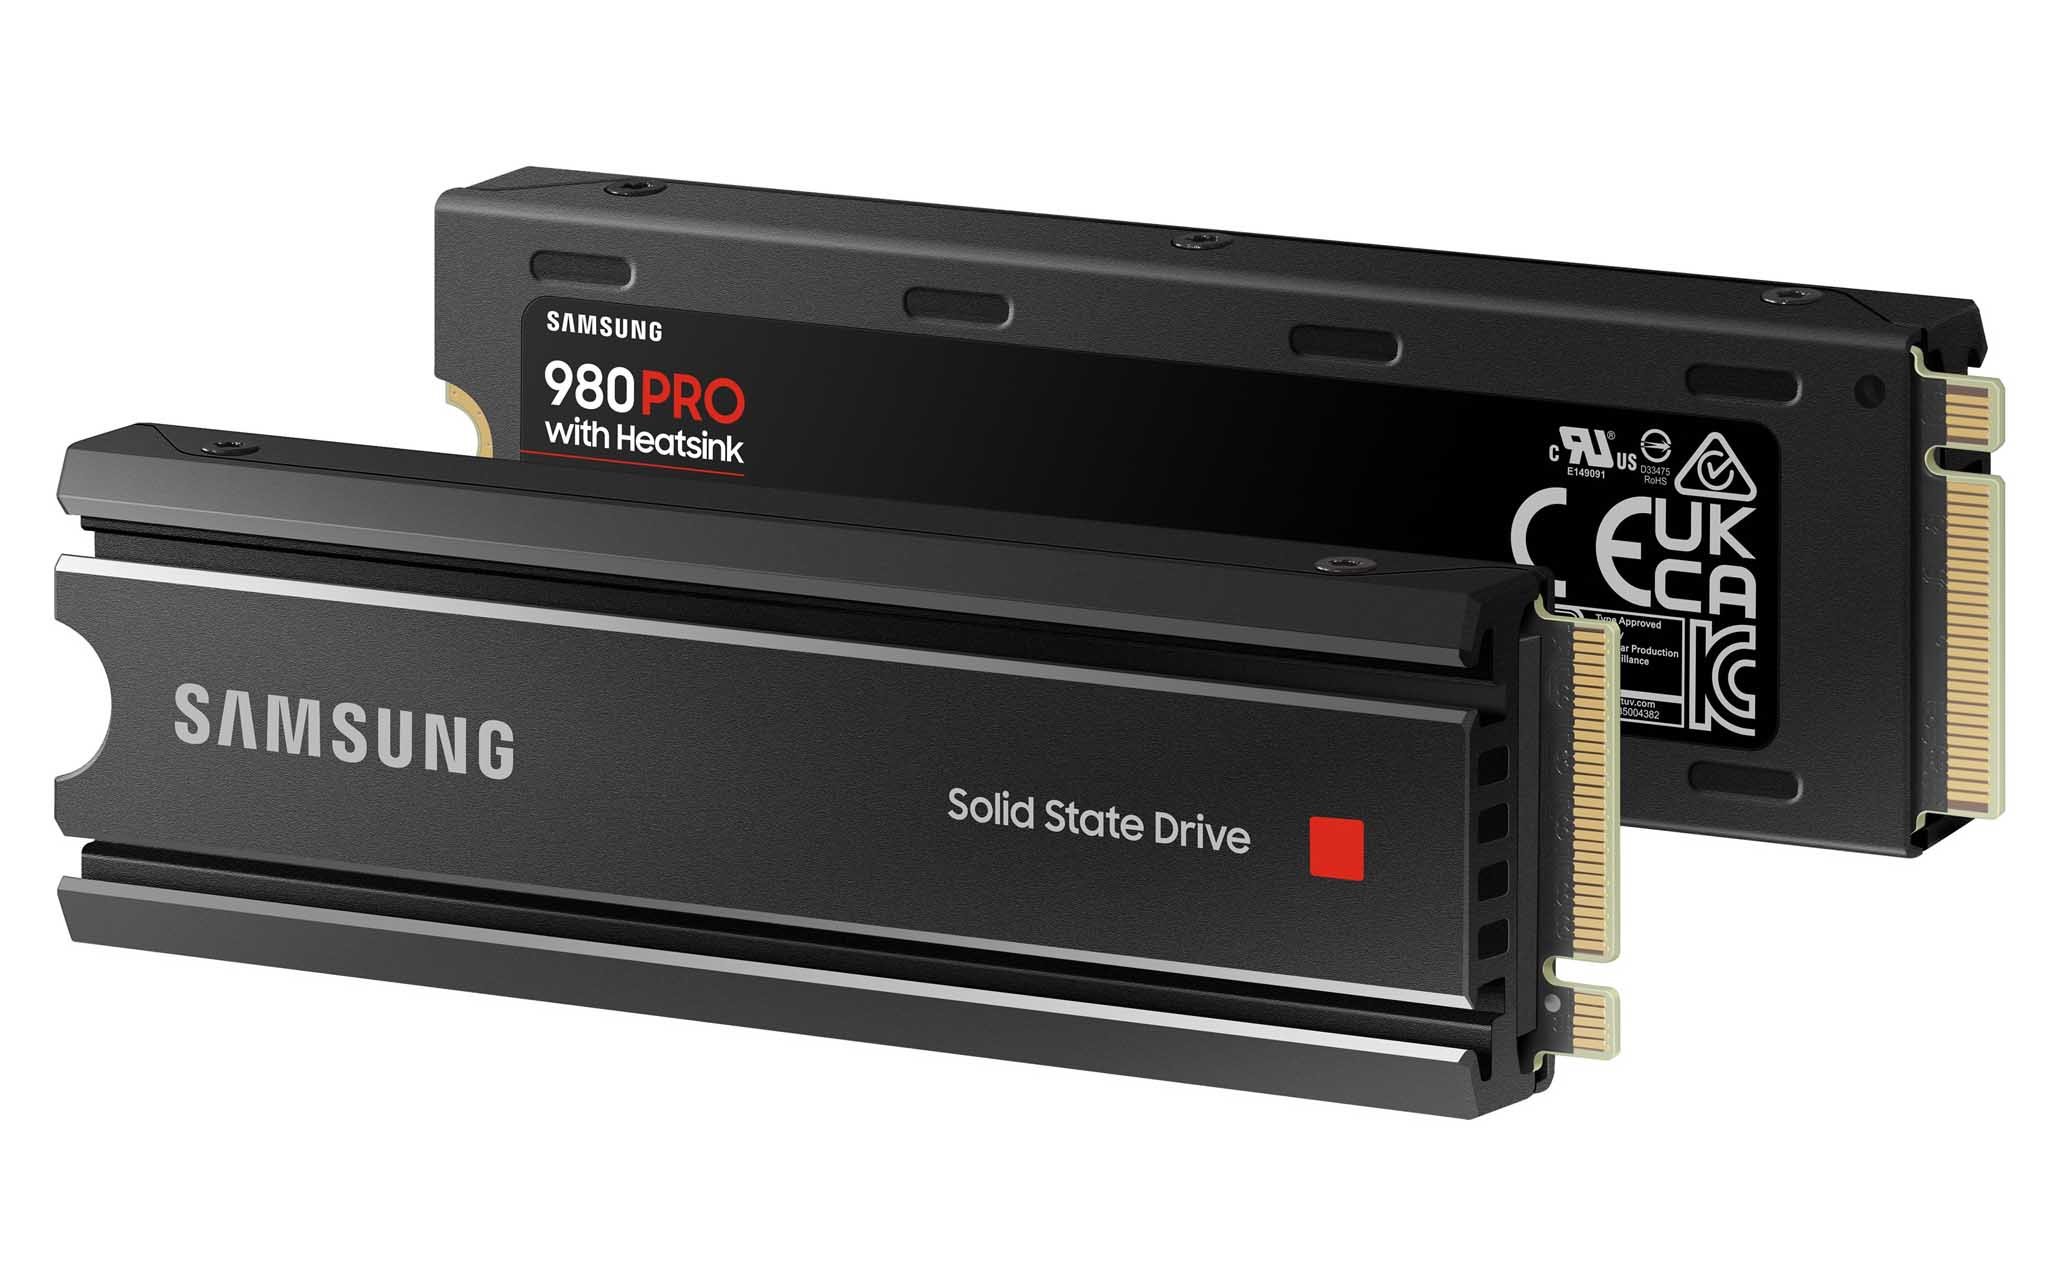 Cuối cùng Samsung 980 Pro cũng có tản nhiệt, phục vụ cho anh em cắm PS5 mở rộng lưu trữ